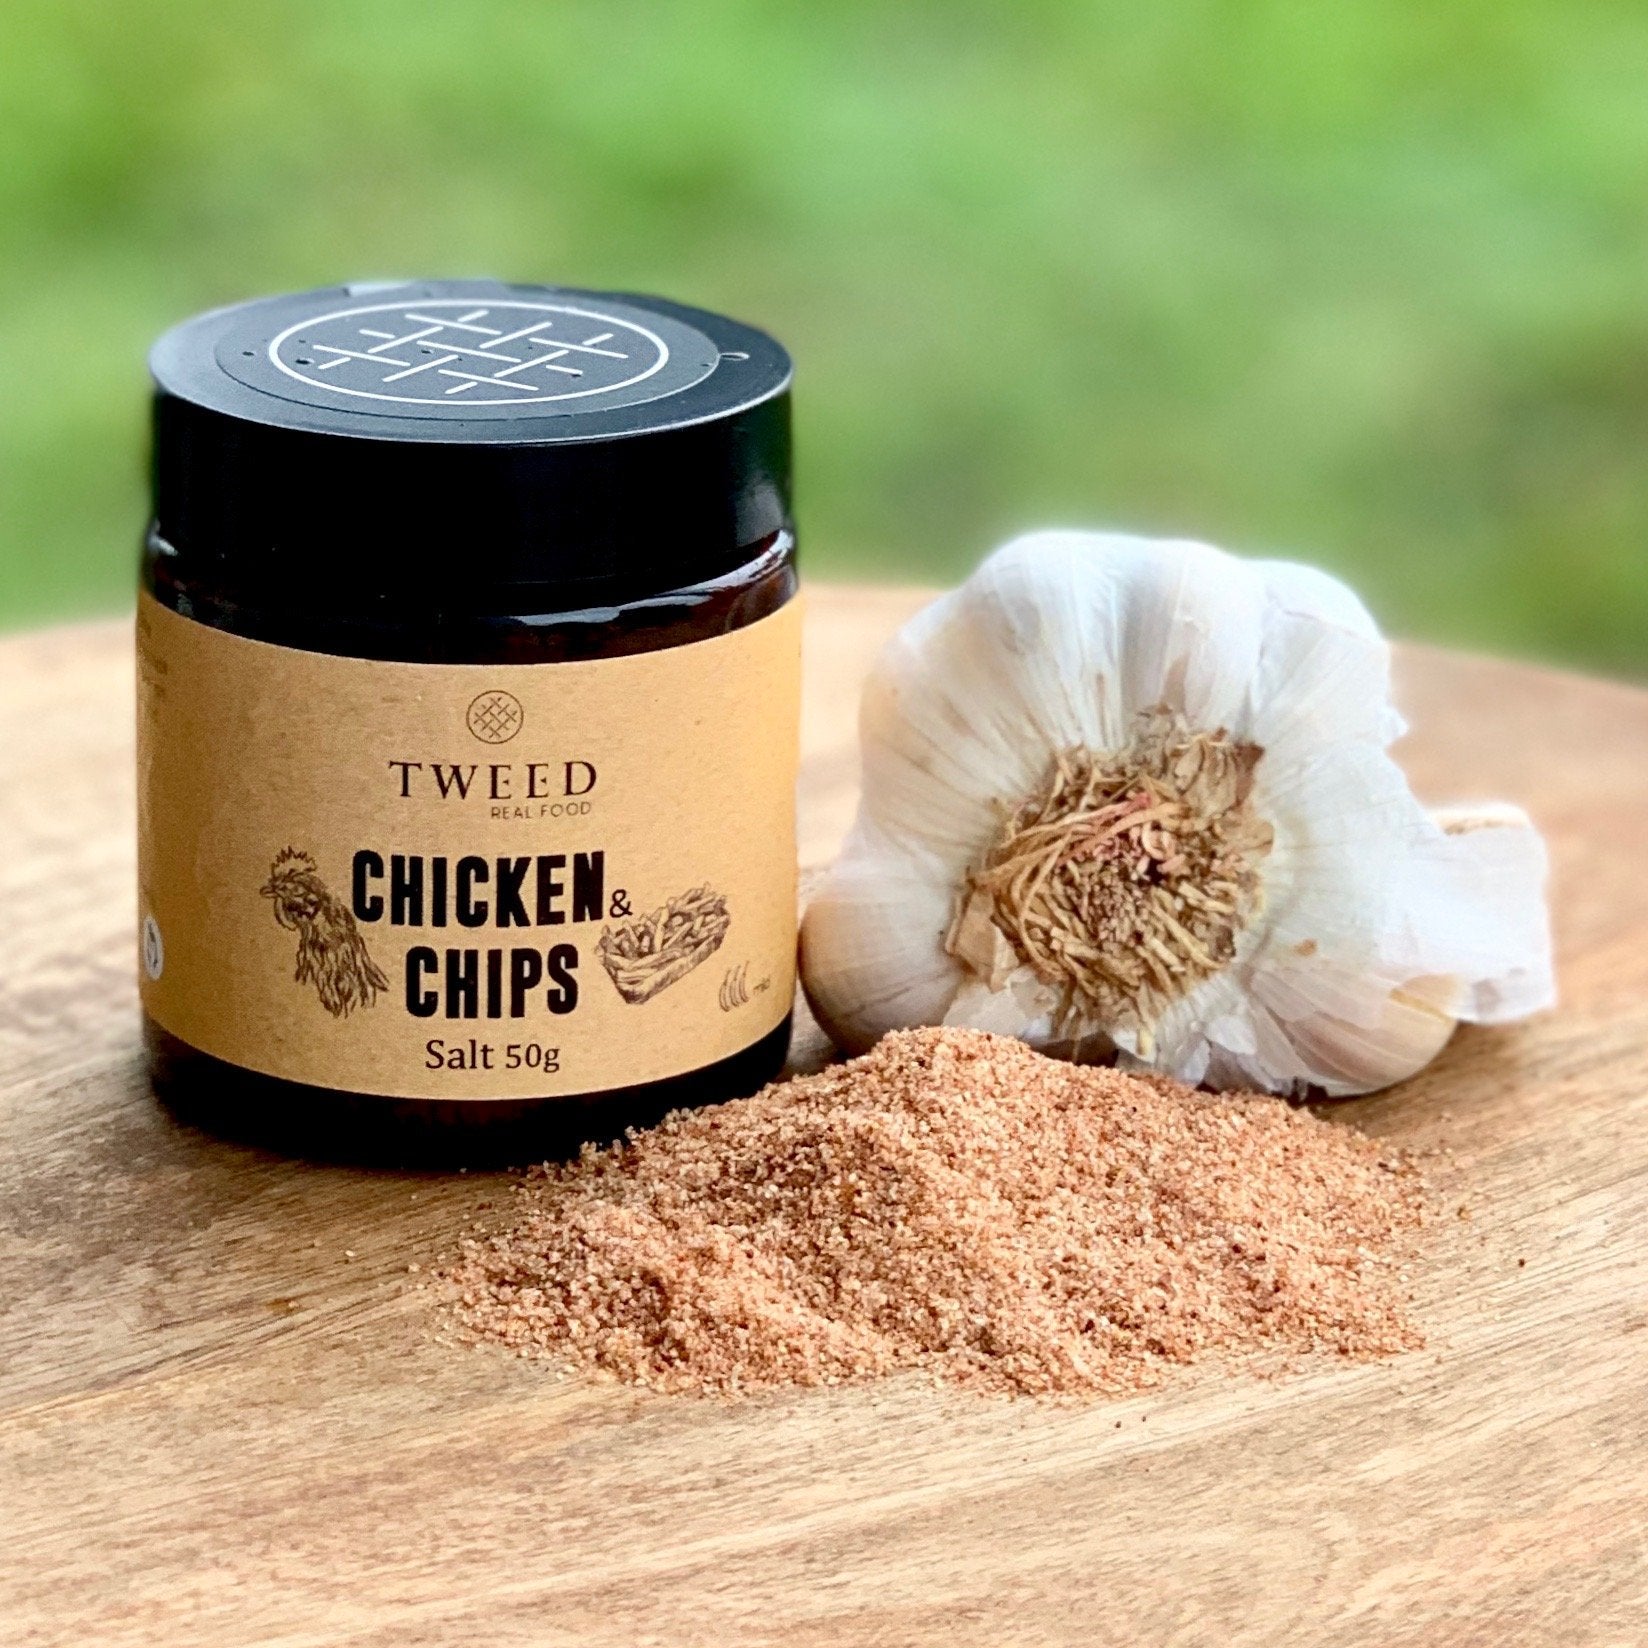 Chicken & Chips Salt